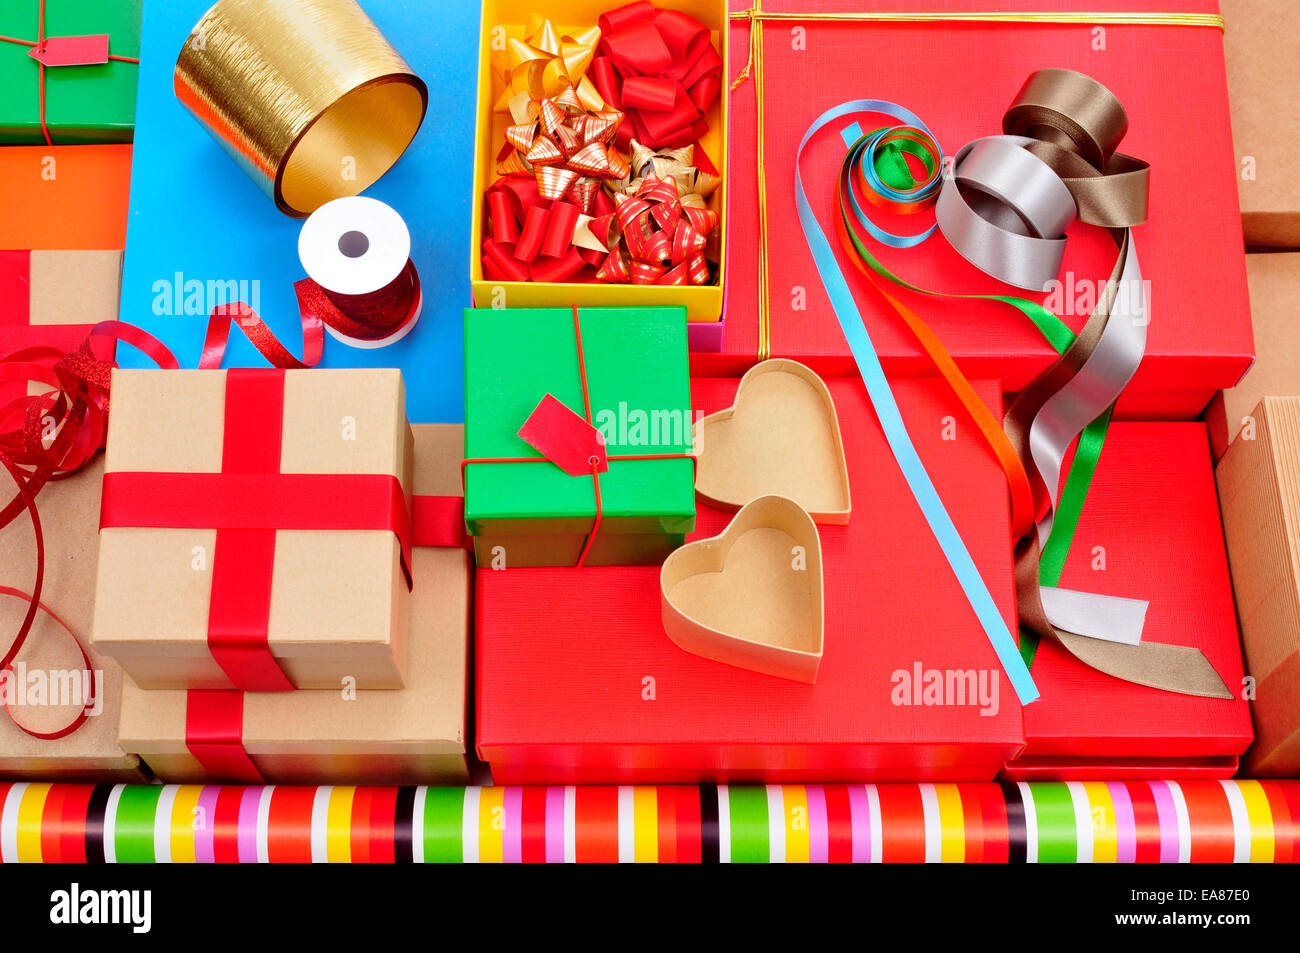 Una pila di scatole diverse, la carta di avvolgimento, nastro e archetti in nastro di diversi colori per preparare dei regali Foto Stock